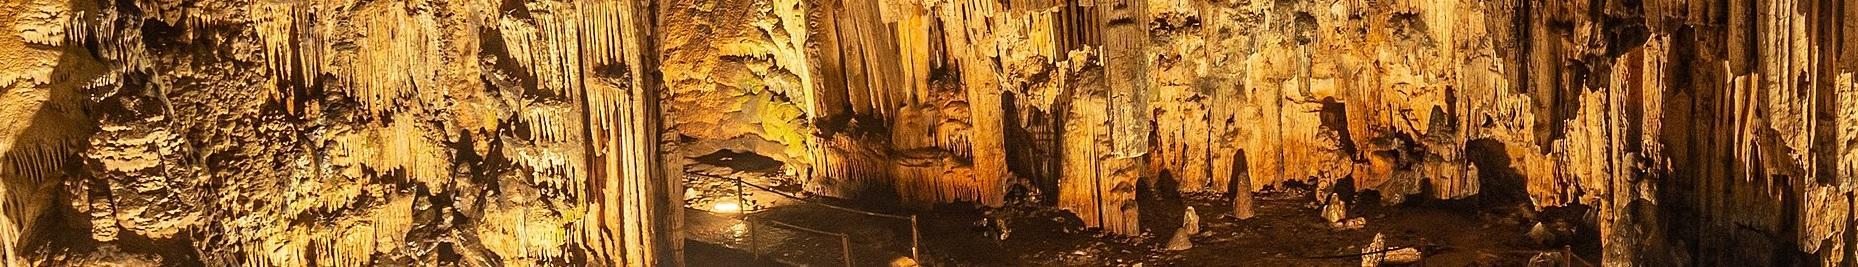 Μελιδόνι, σπήλαιο στην Κρήτη